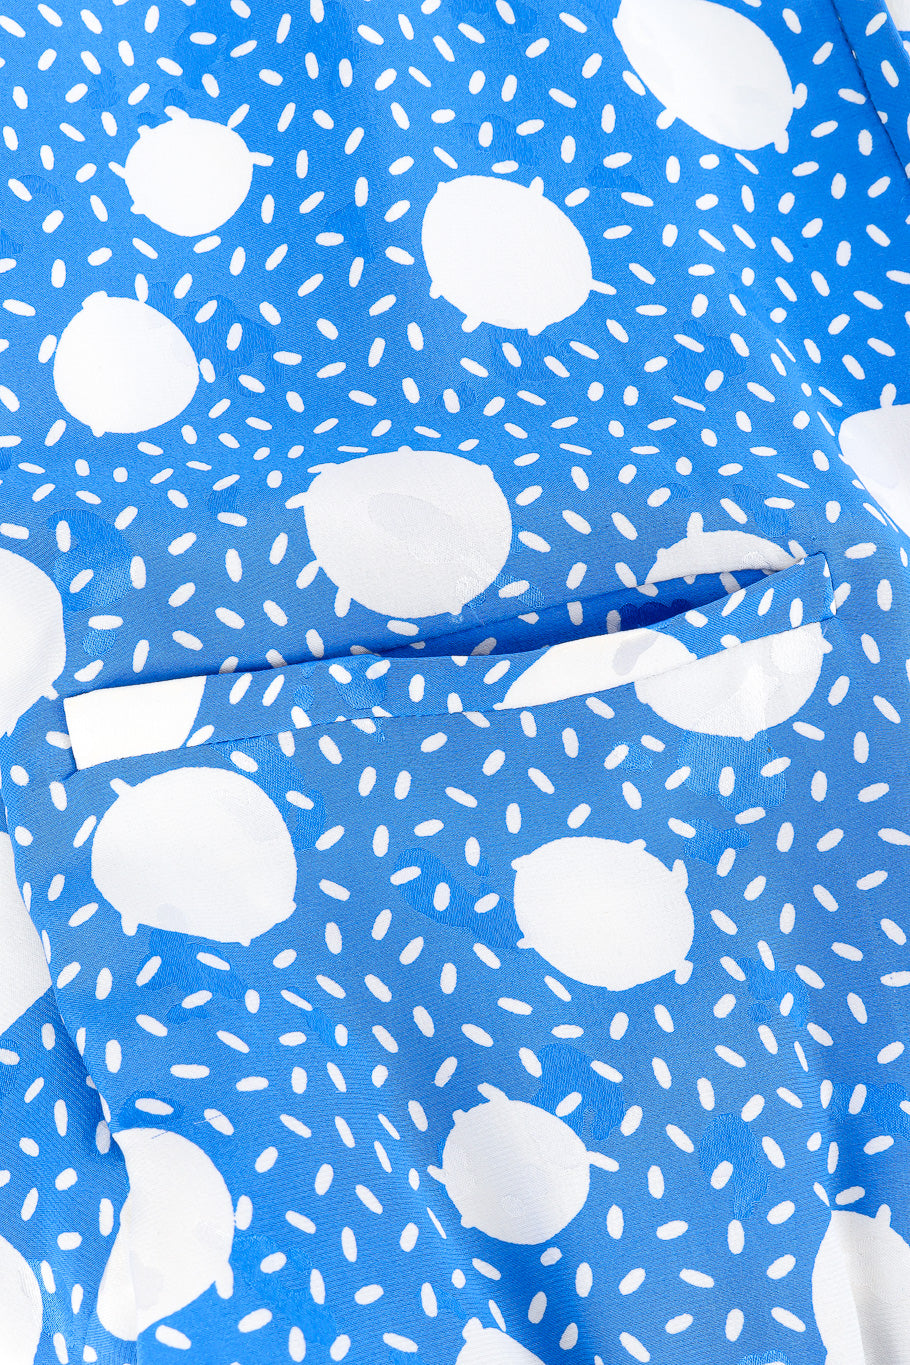 Valentino polka dot speckled dress front pocket detail @recessla